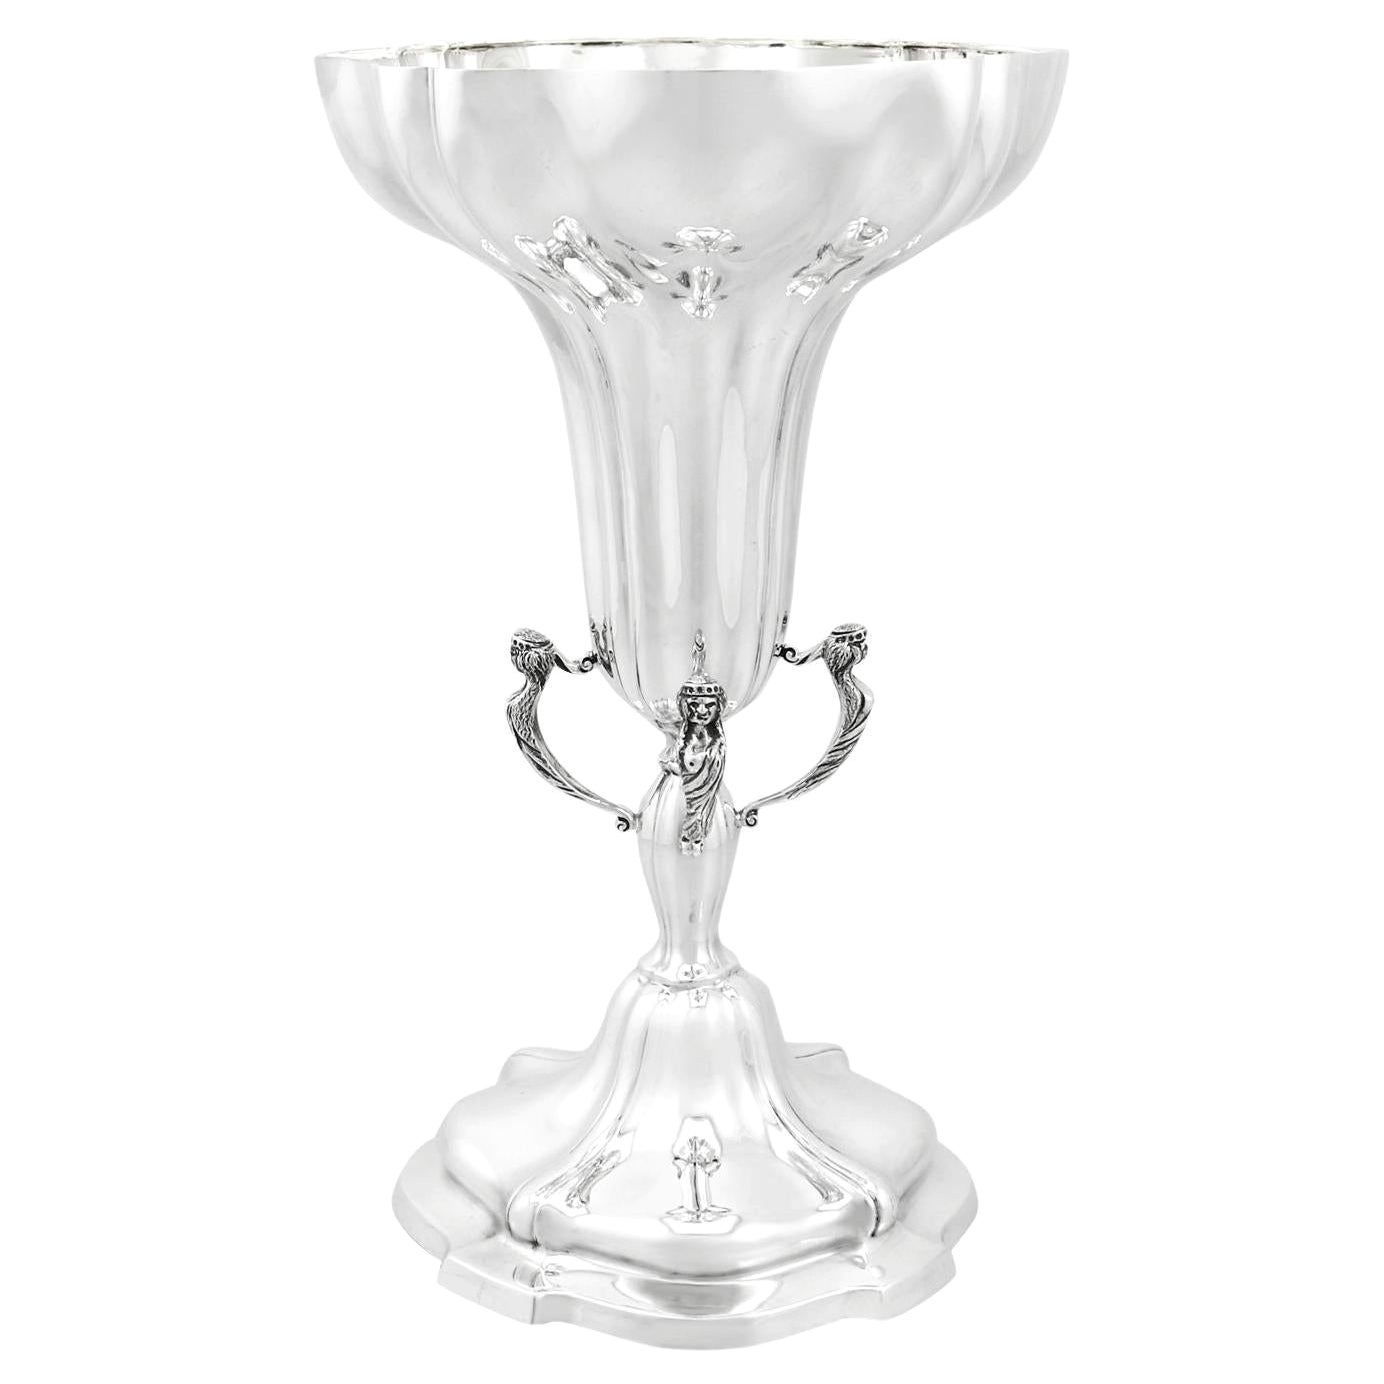 Viners Ltd 1930s Antique Edwardian Sterling Silver Presentation Cup or Vase For Sale